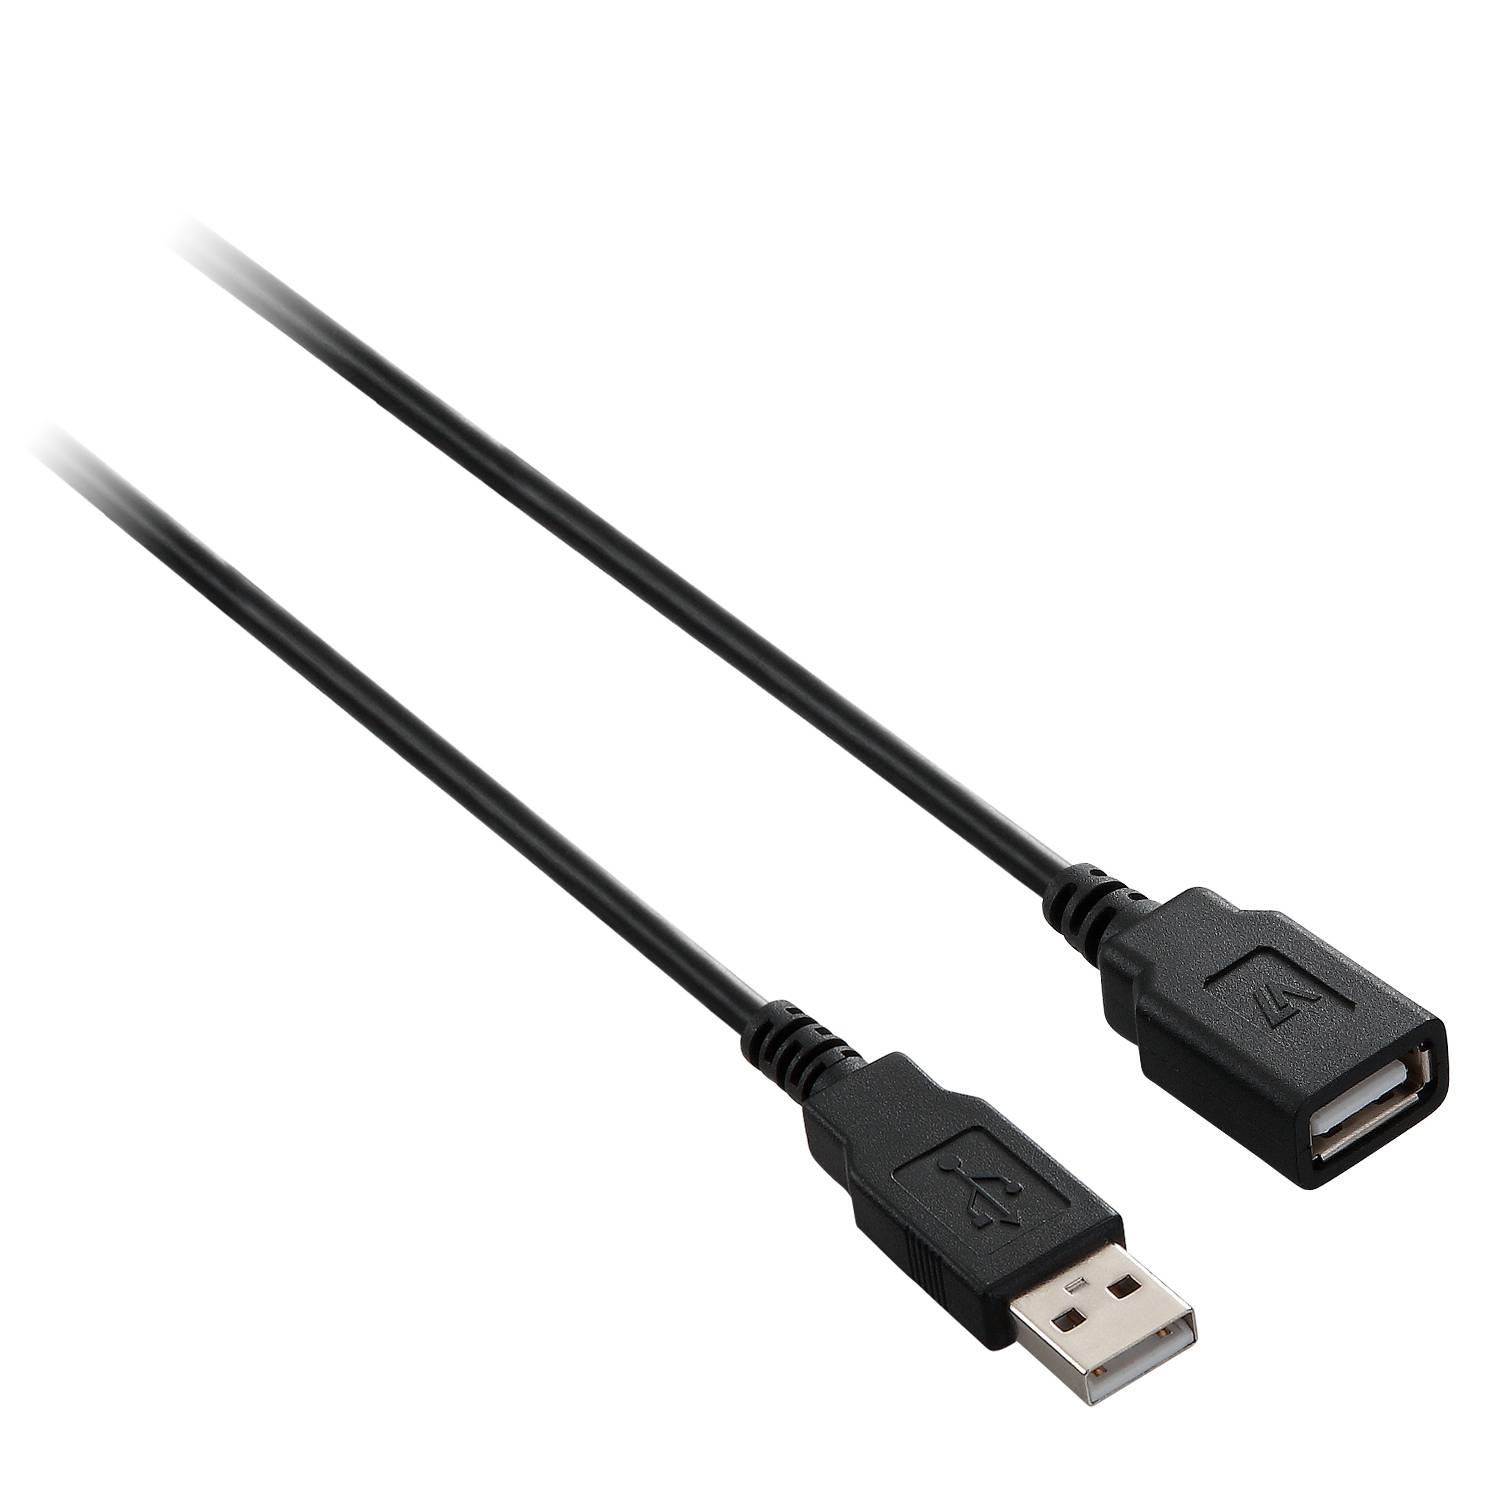 Rca Informatique - Image du produit : USB 2.0 A EXTENSION CABLE 5M DATA TRANSFER CABLE 480MBPS